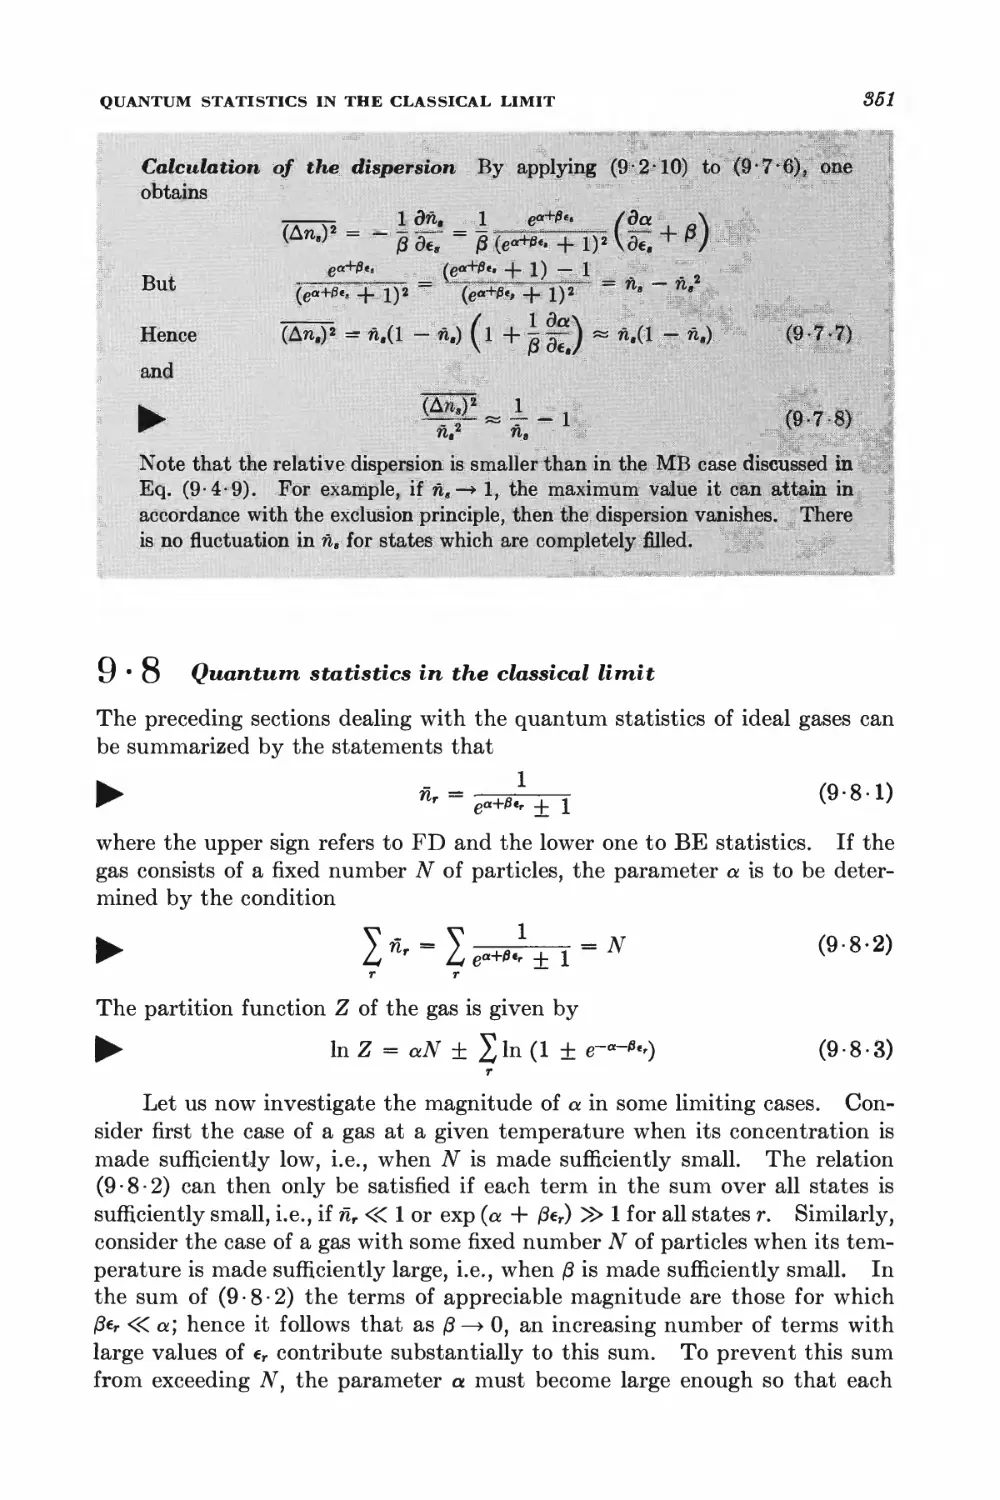 9.8 Quantum statistics in the classical limit